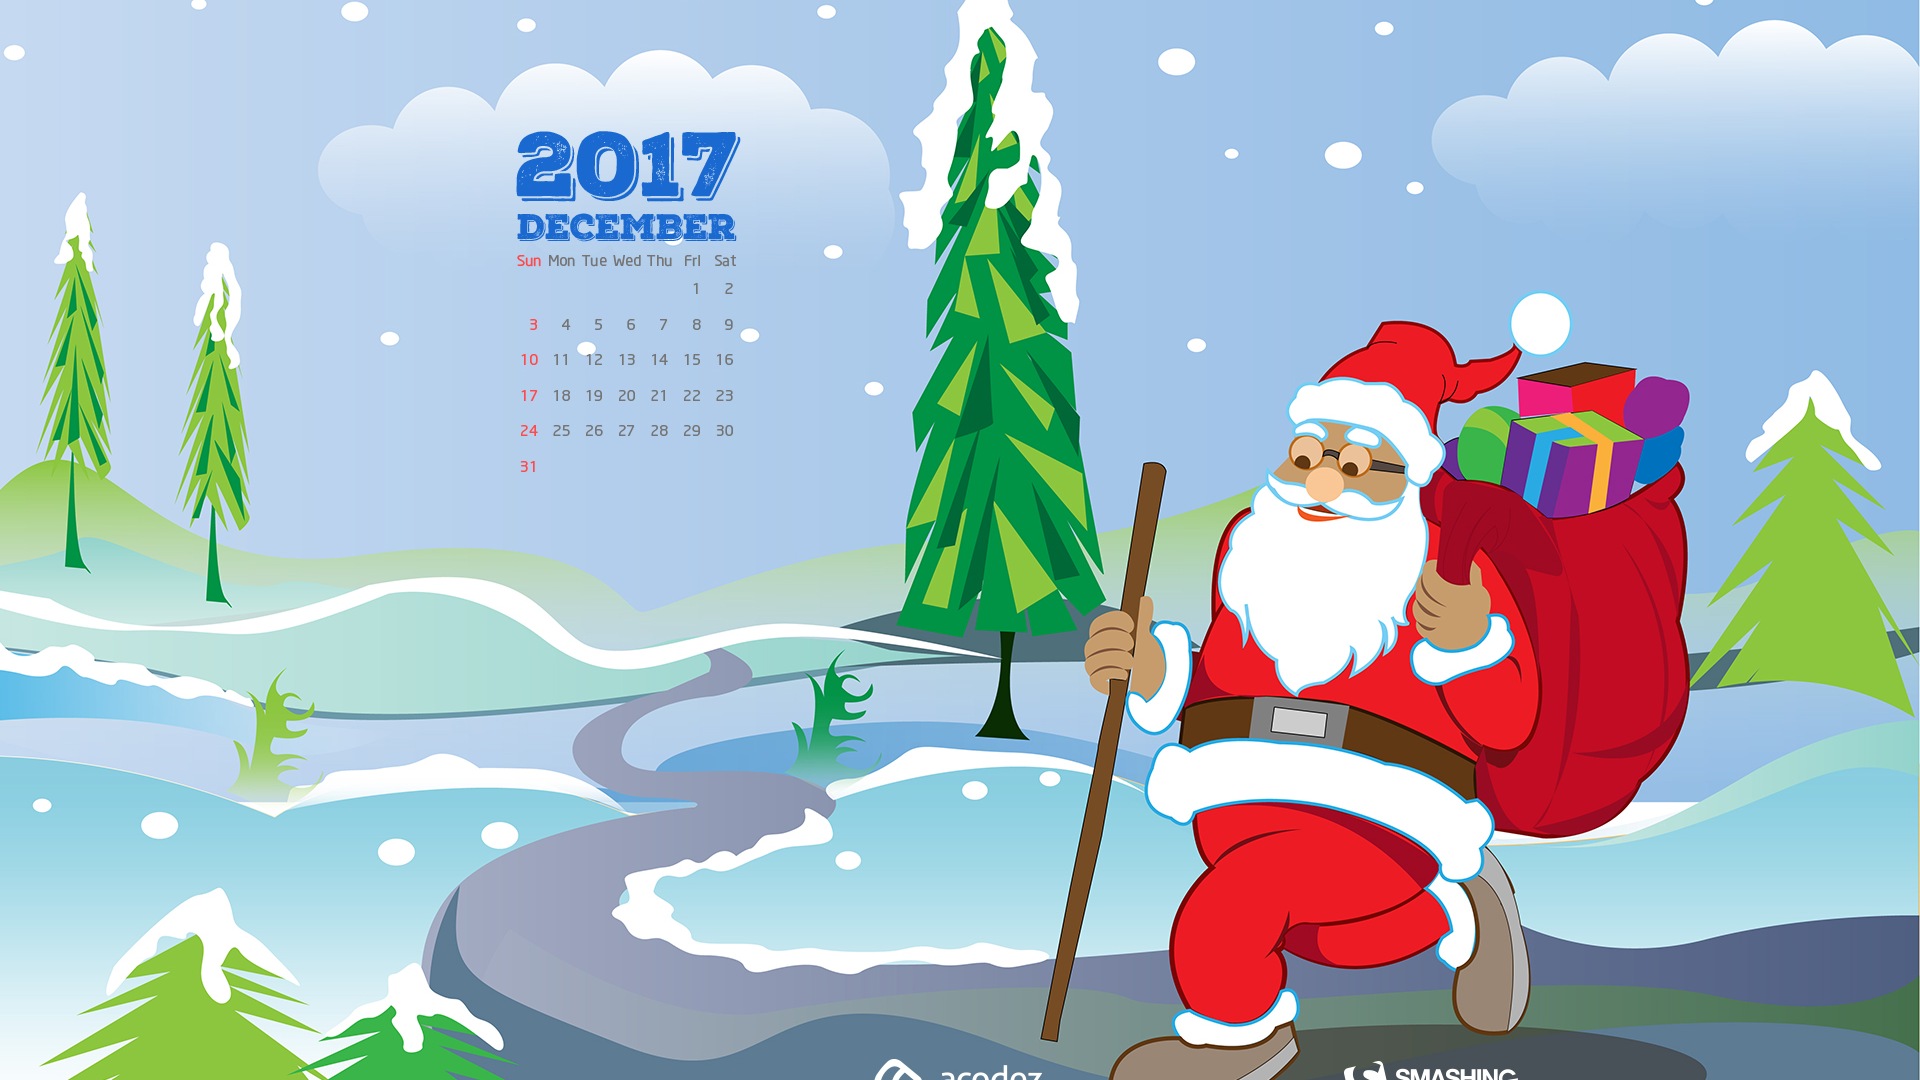 December 2017 Calendar Wallpaper #17 - 1920x1080